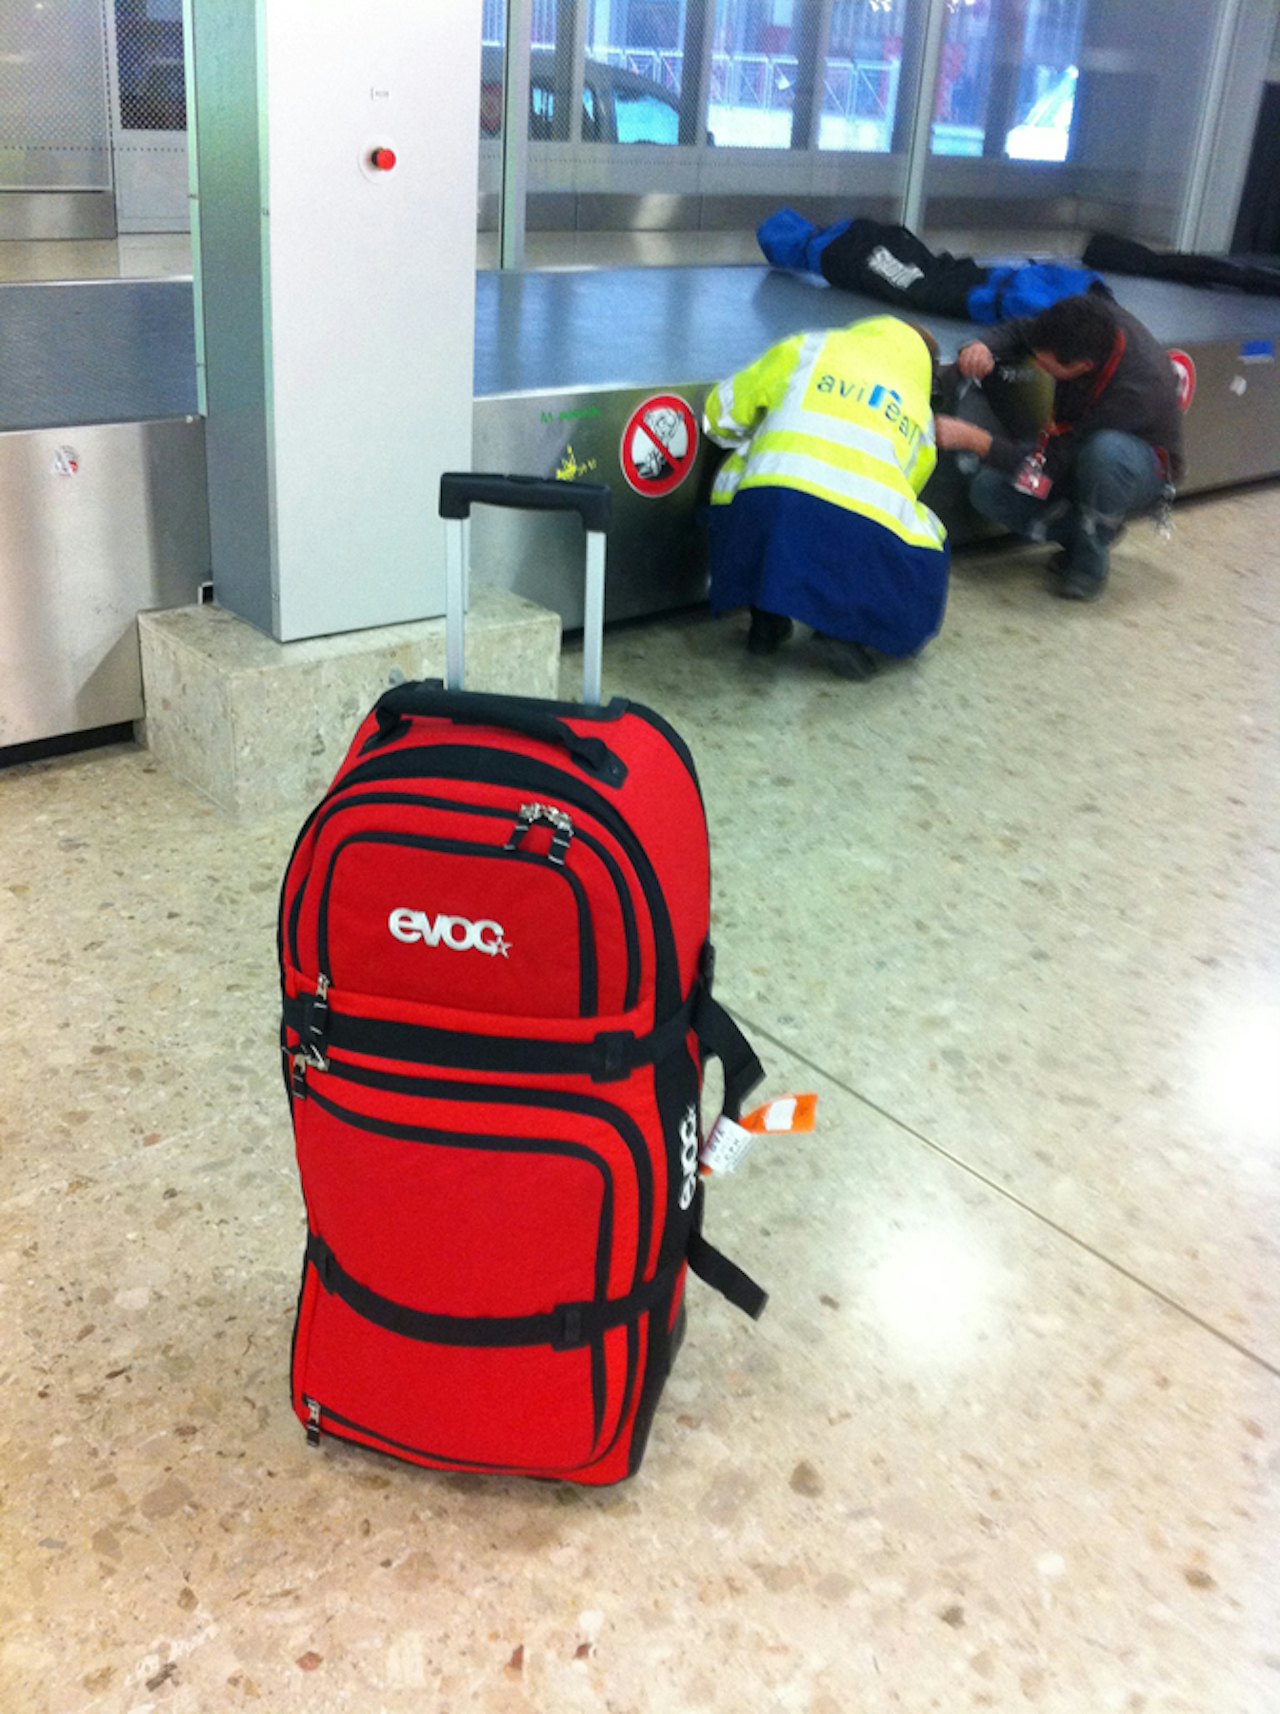 PÅ TUR: Evoc World Traveller på flyplassen i Geneve. Foto: Tore Meirik